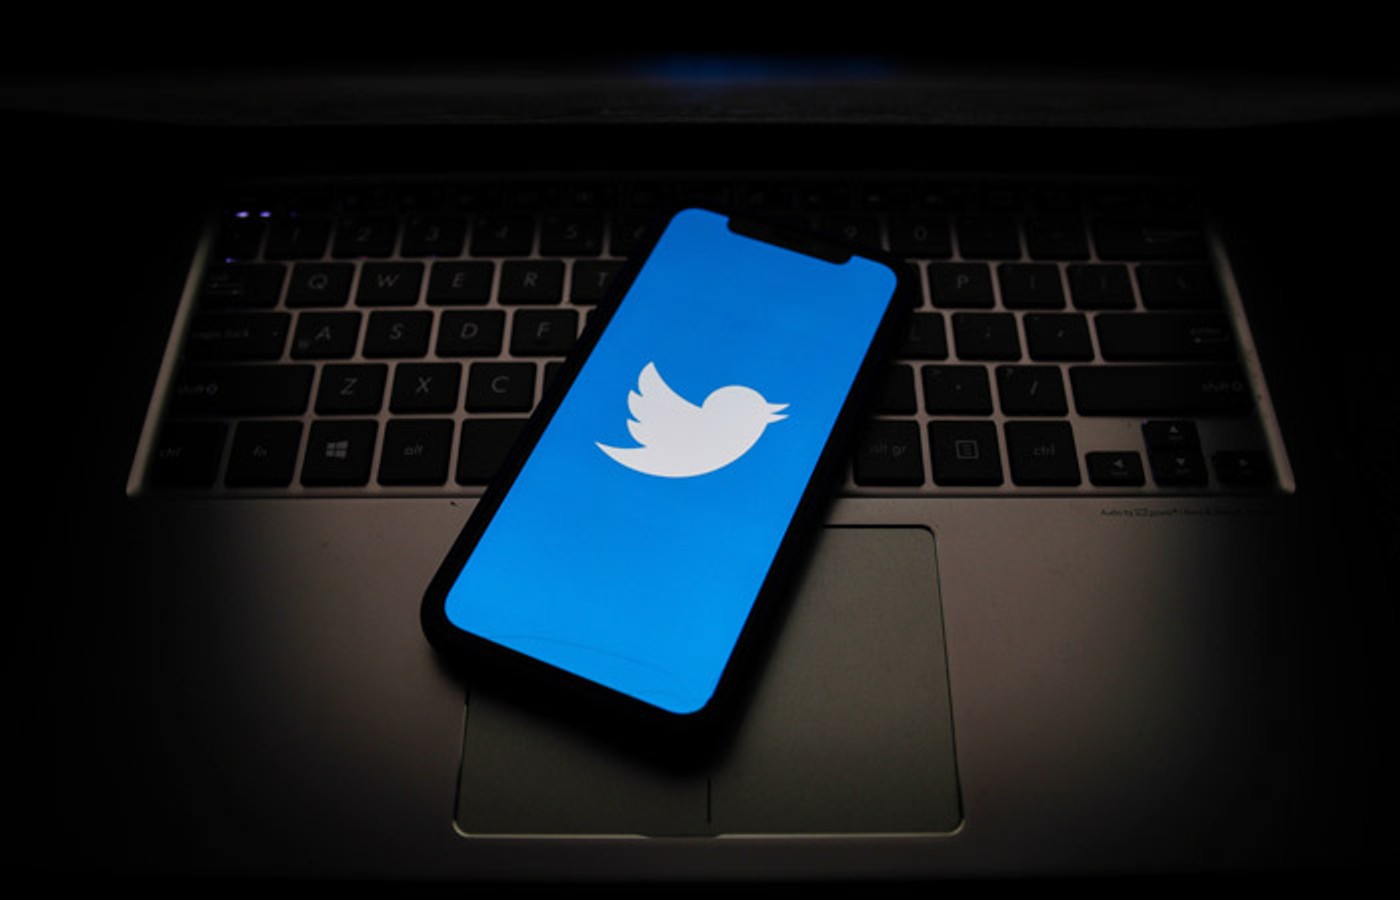 Загальна сума штрафів за позовами російських властей до Twitter досягла 8,9 млн рублів. Експерти сумніваються, що компанія буде їх оплачувати